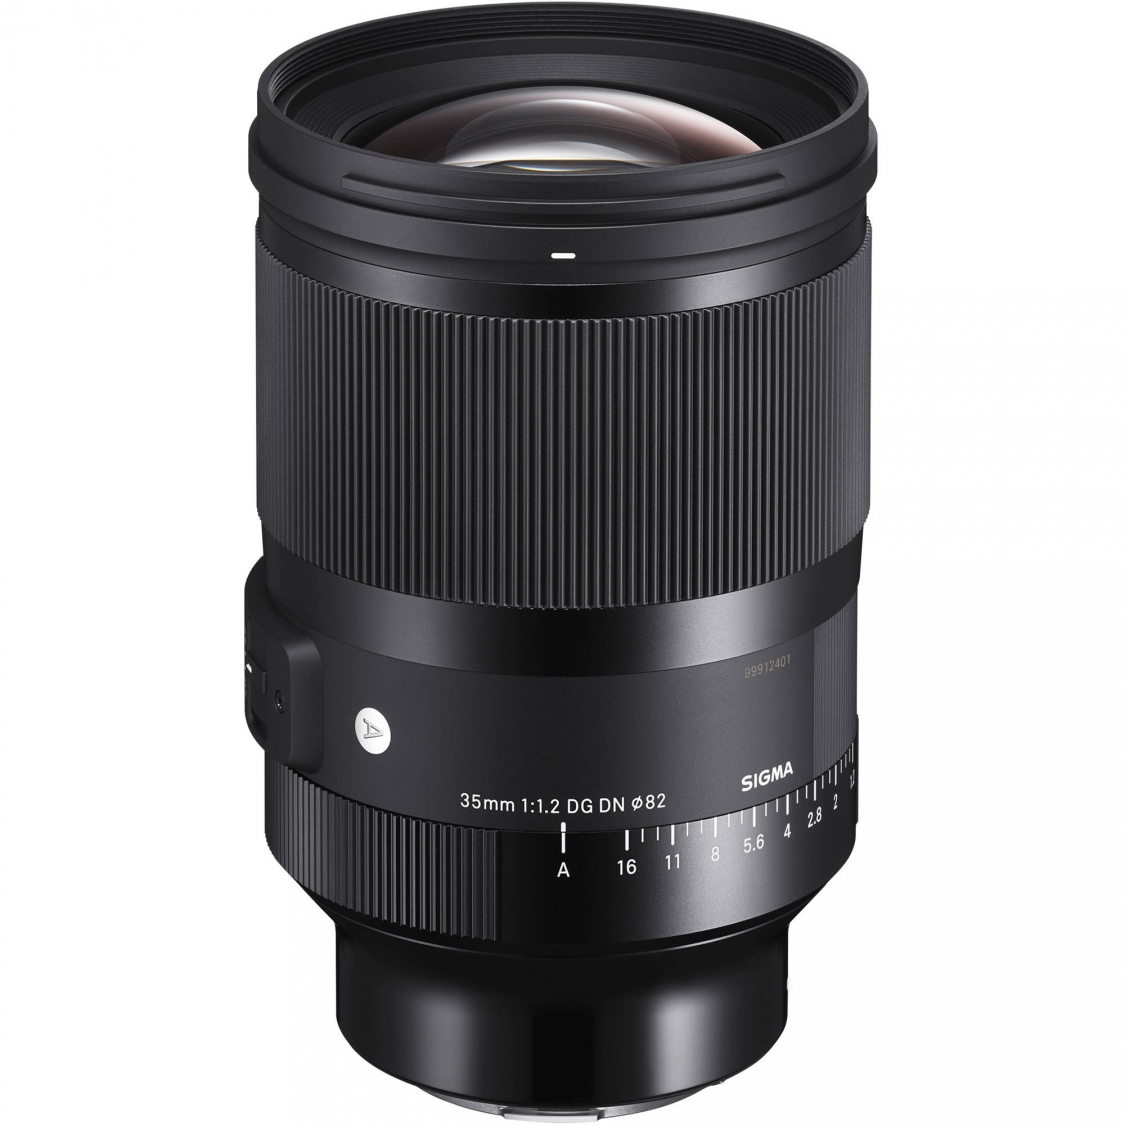 Sigma 35mm F1.2 DG DN Art Lens for Sony E Mount